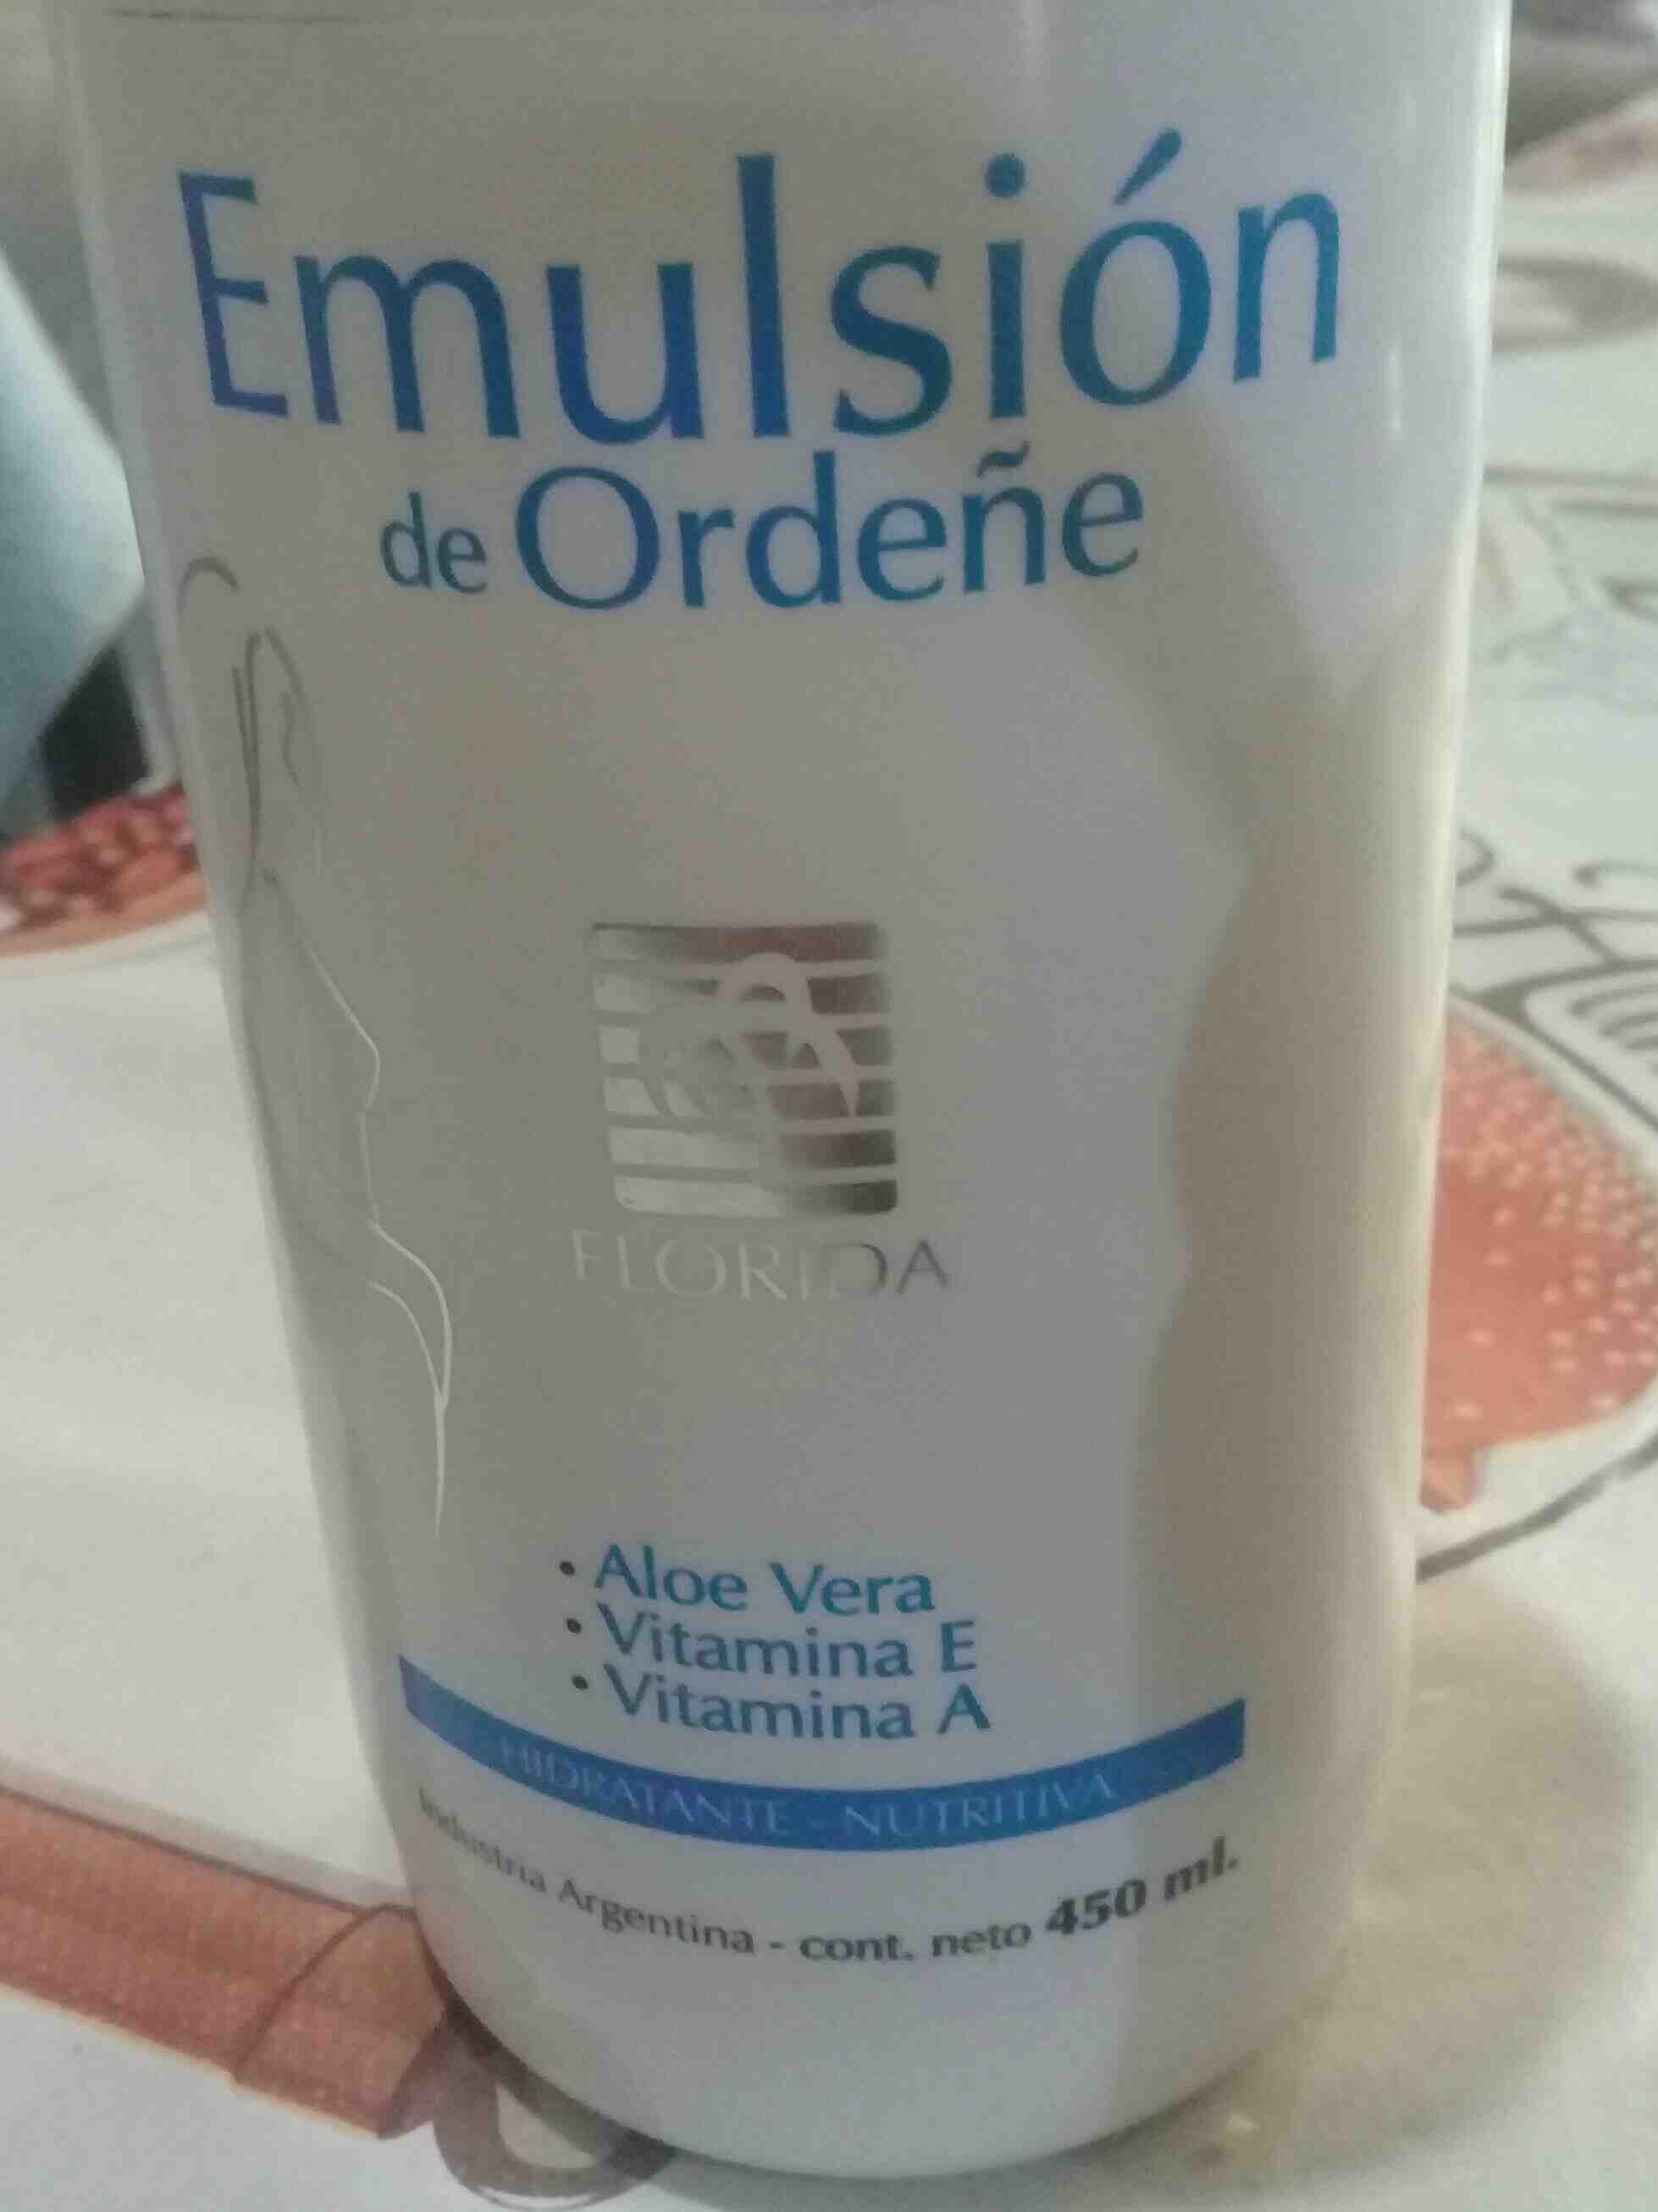 Emulsion de Ordeñe - Product - en